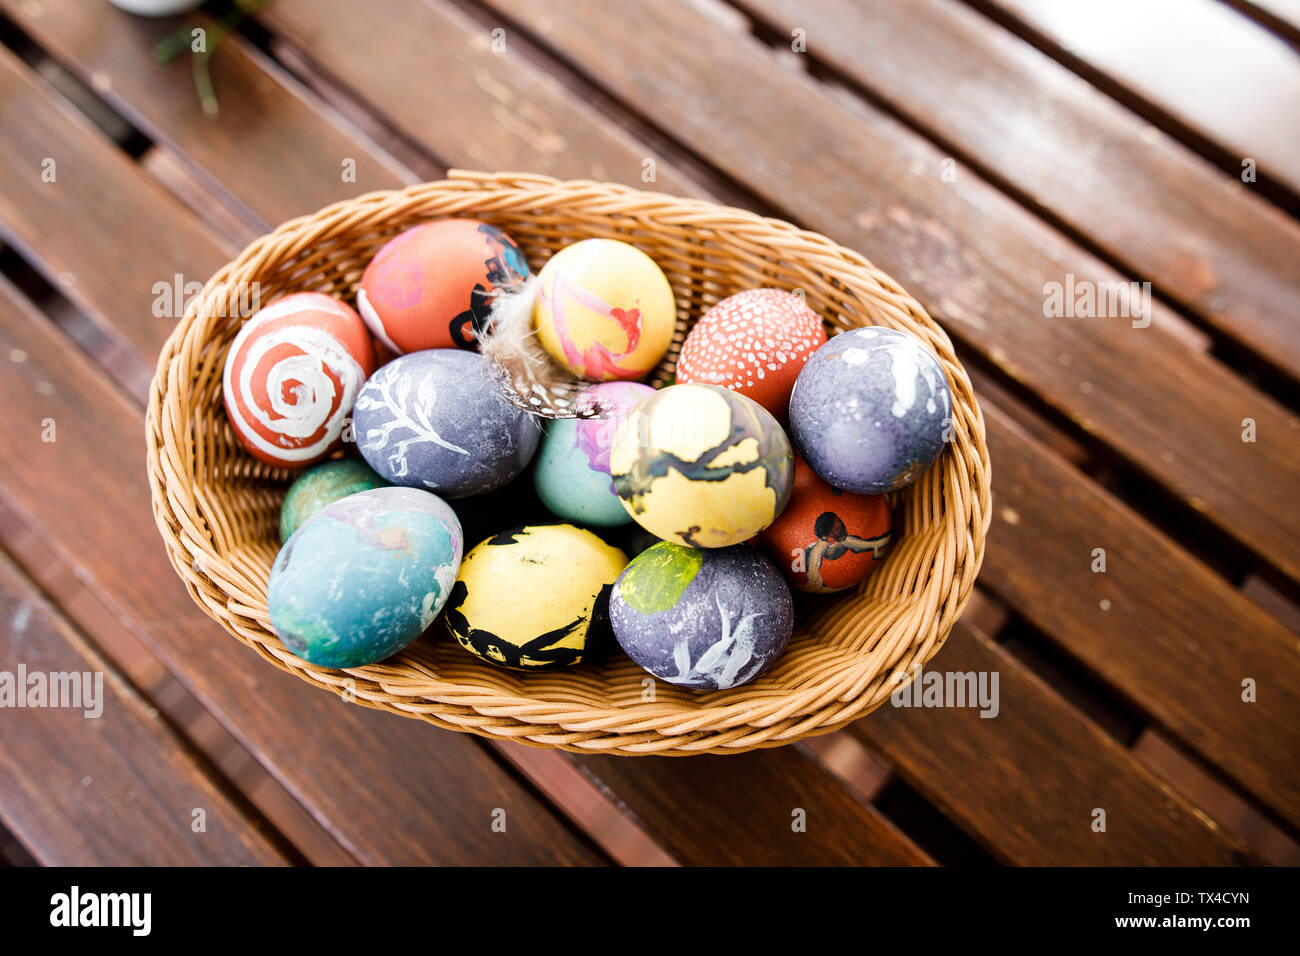 Oeufs de Pâques dans un panier sur la table en bois Banque D'Images